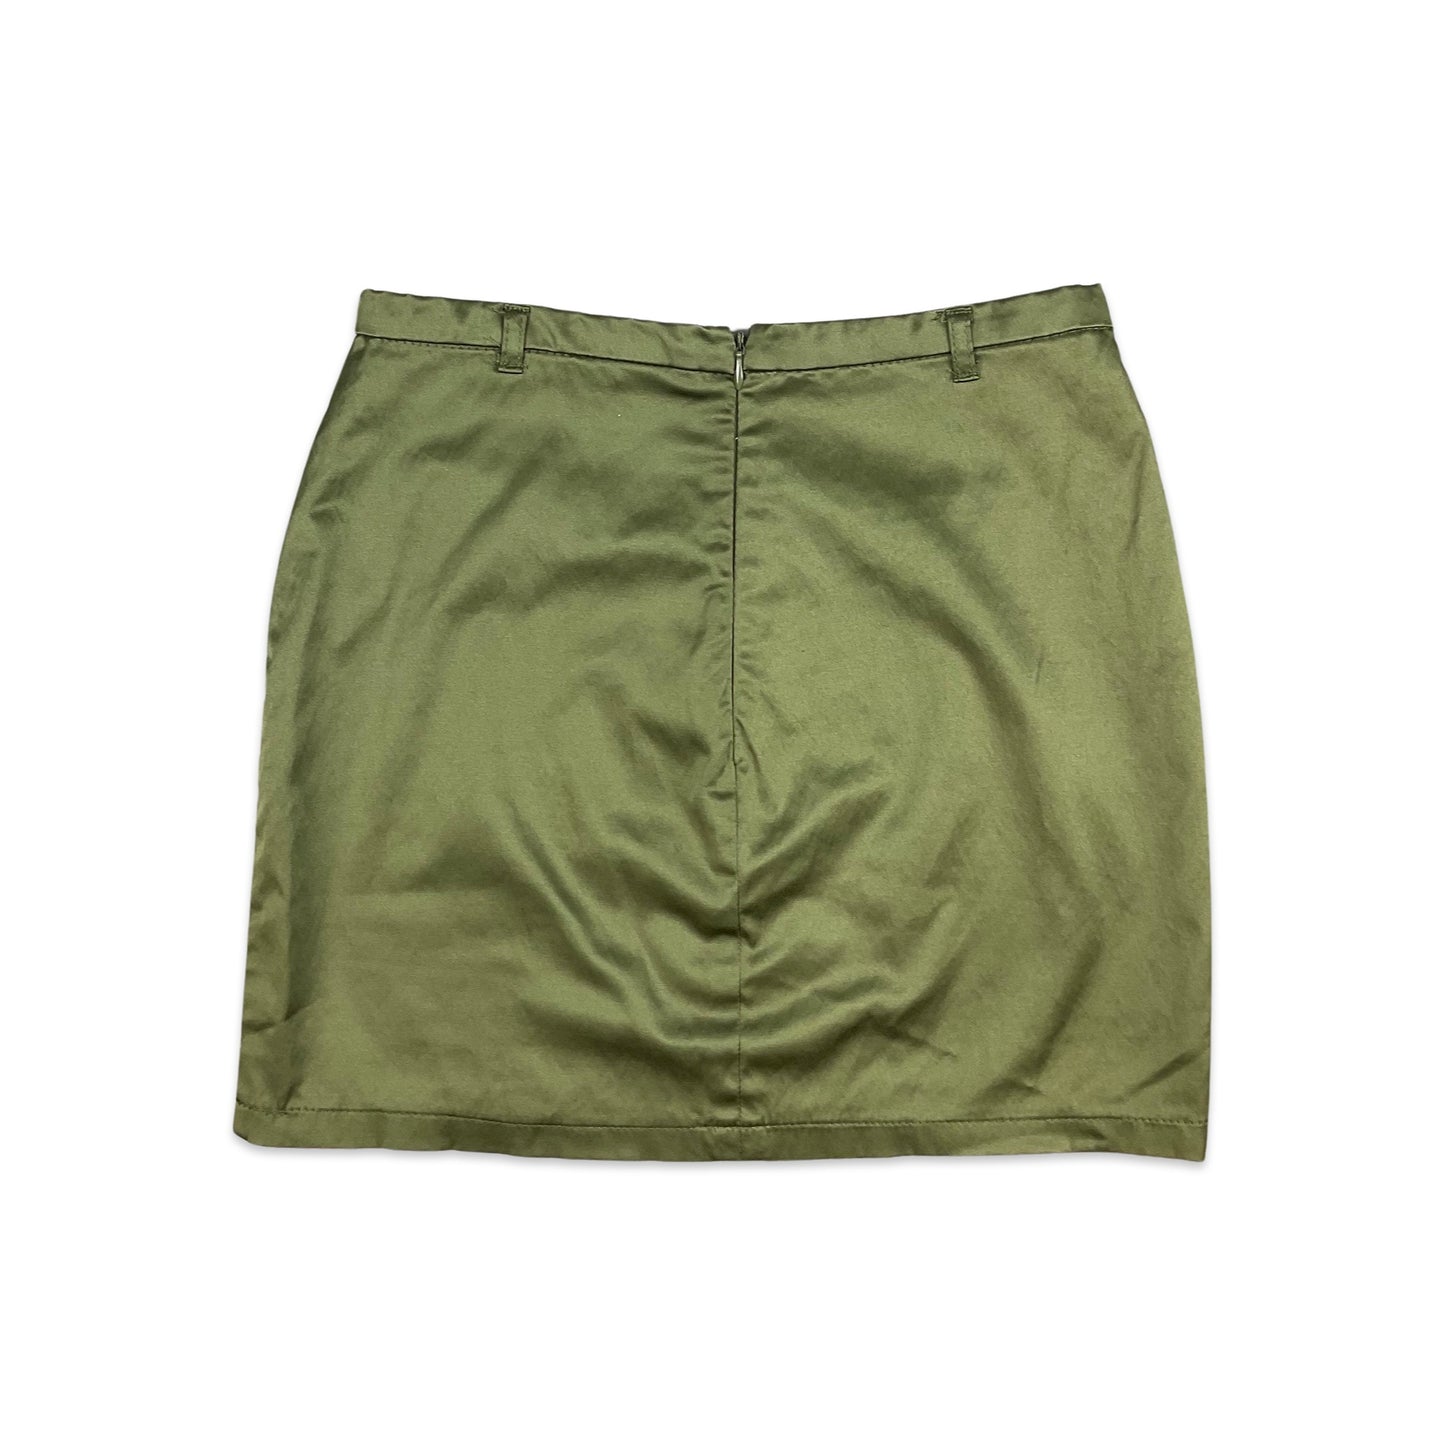 Vintage 90s Khaki Green Metallic Bodycon Mini Skirt 8 10